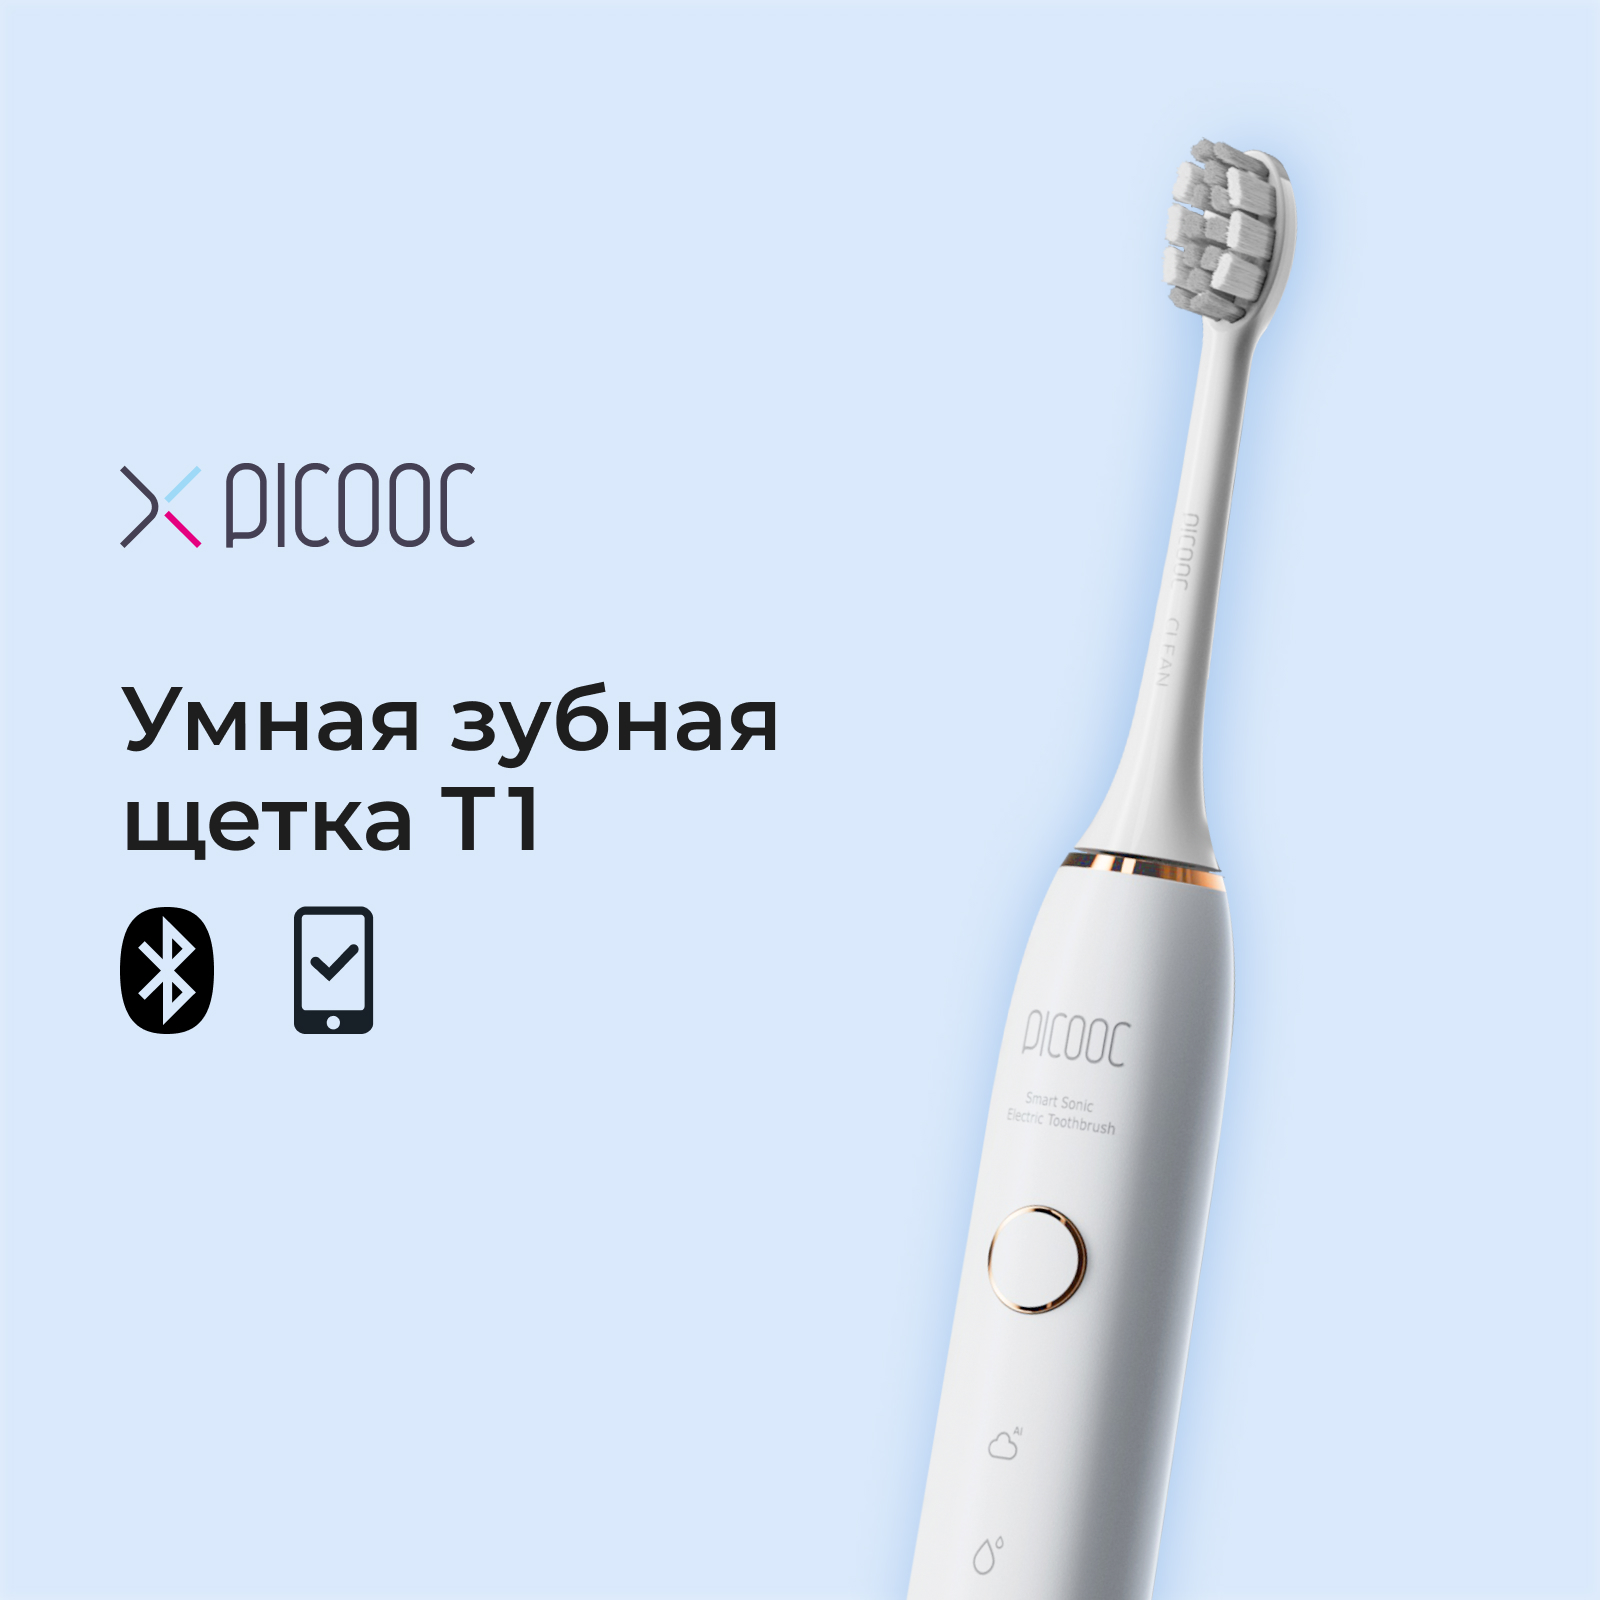 Электрическая зубная щетка Picooc T1 белая умные весы picooc mini lite чёрные